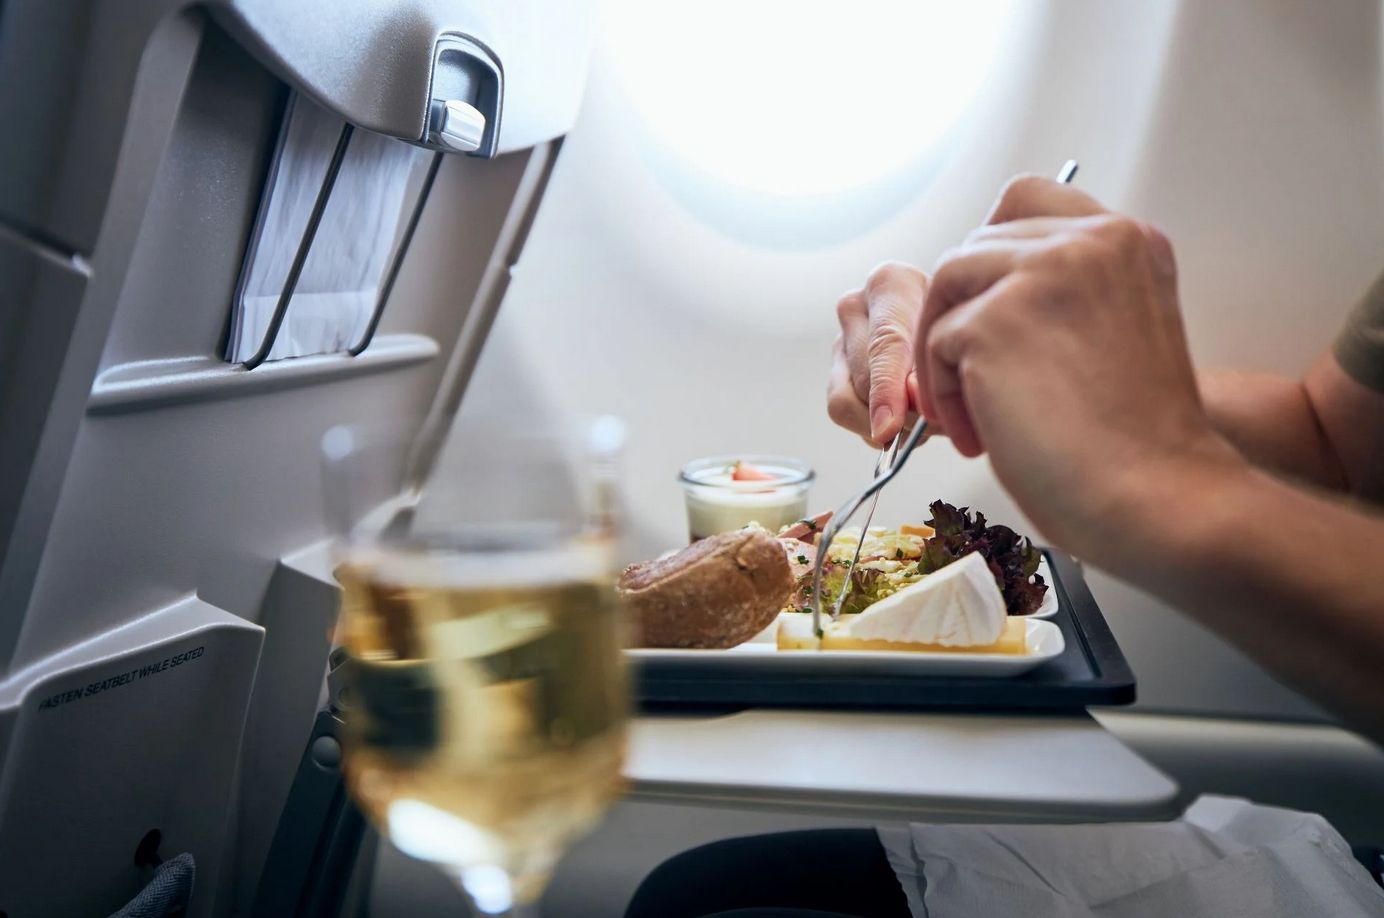 "To obraźliwe". Pasażer pokazał wegański posiłek w samolocie